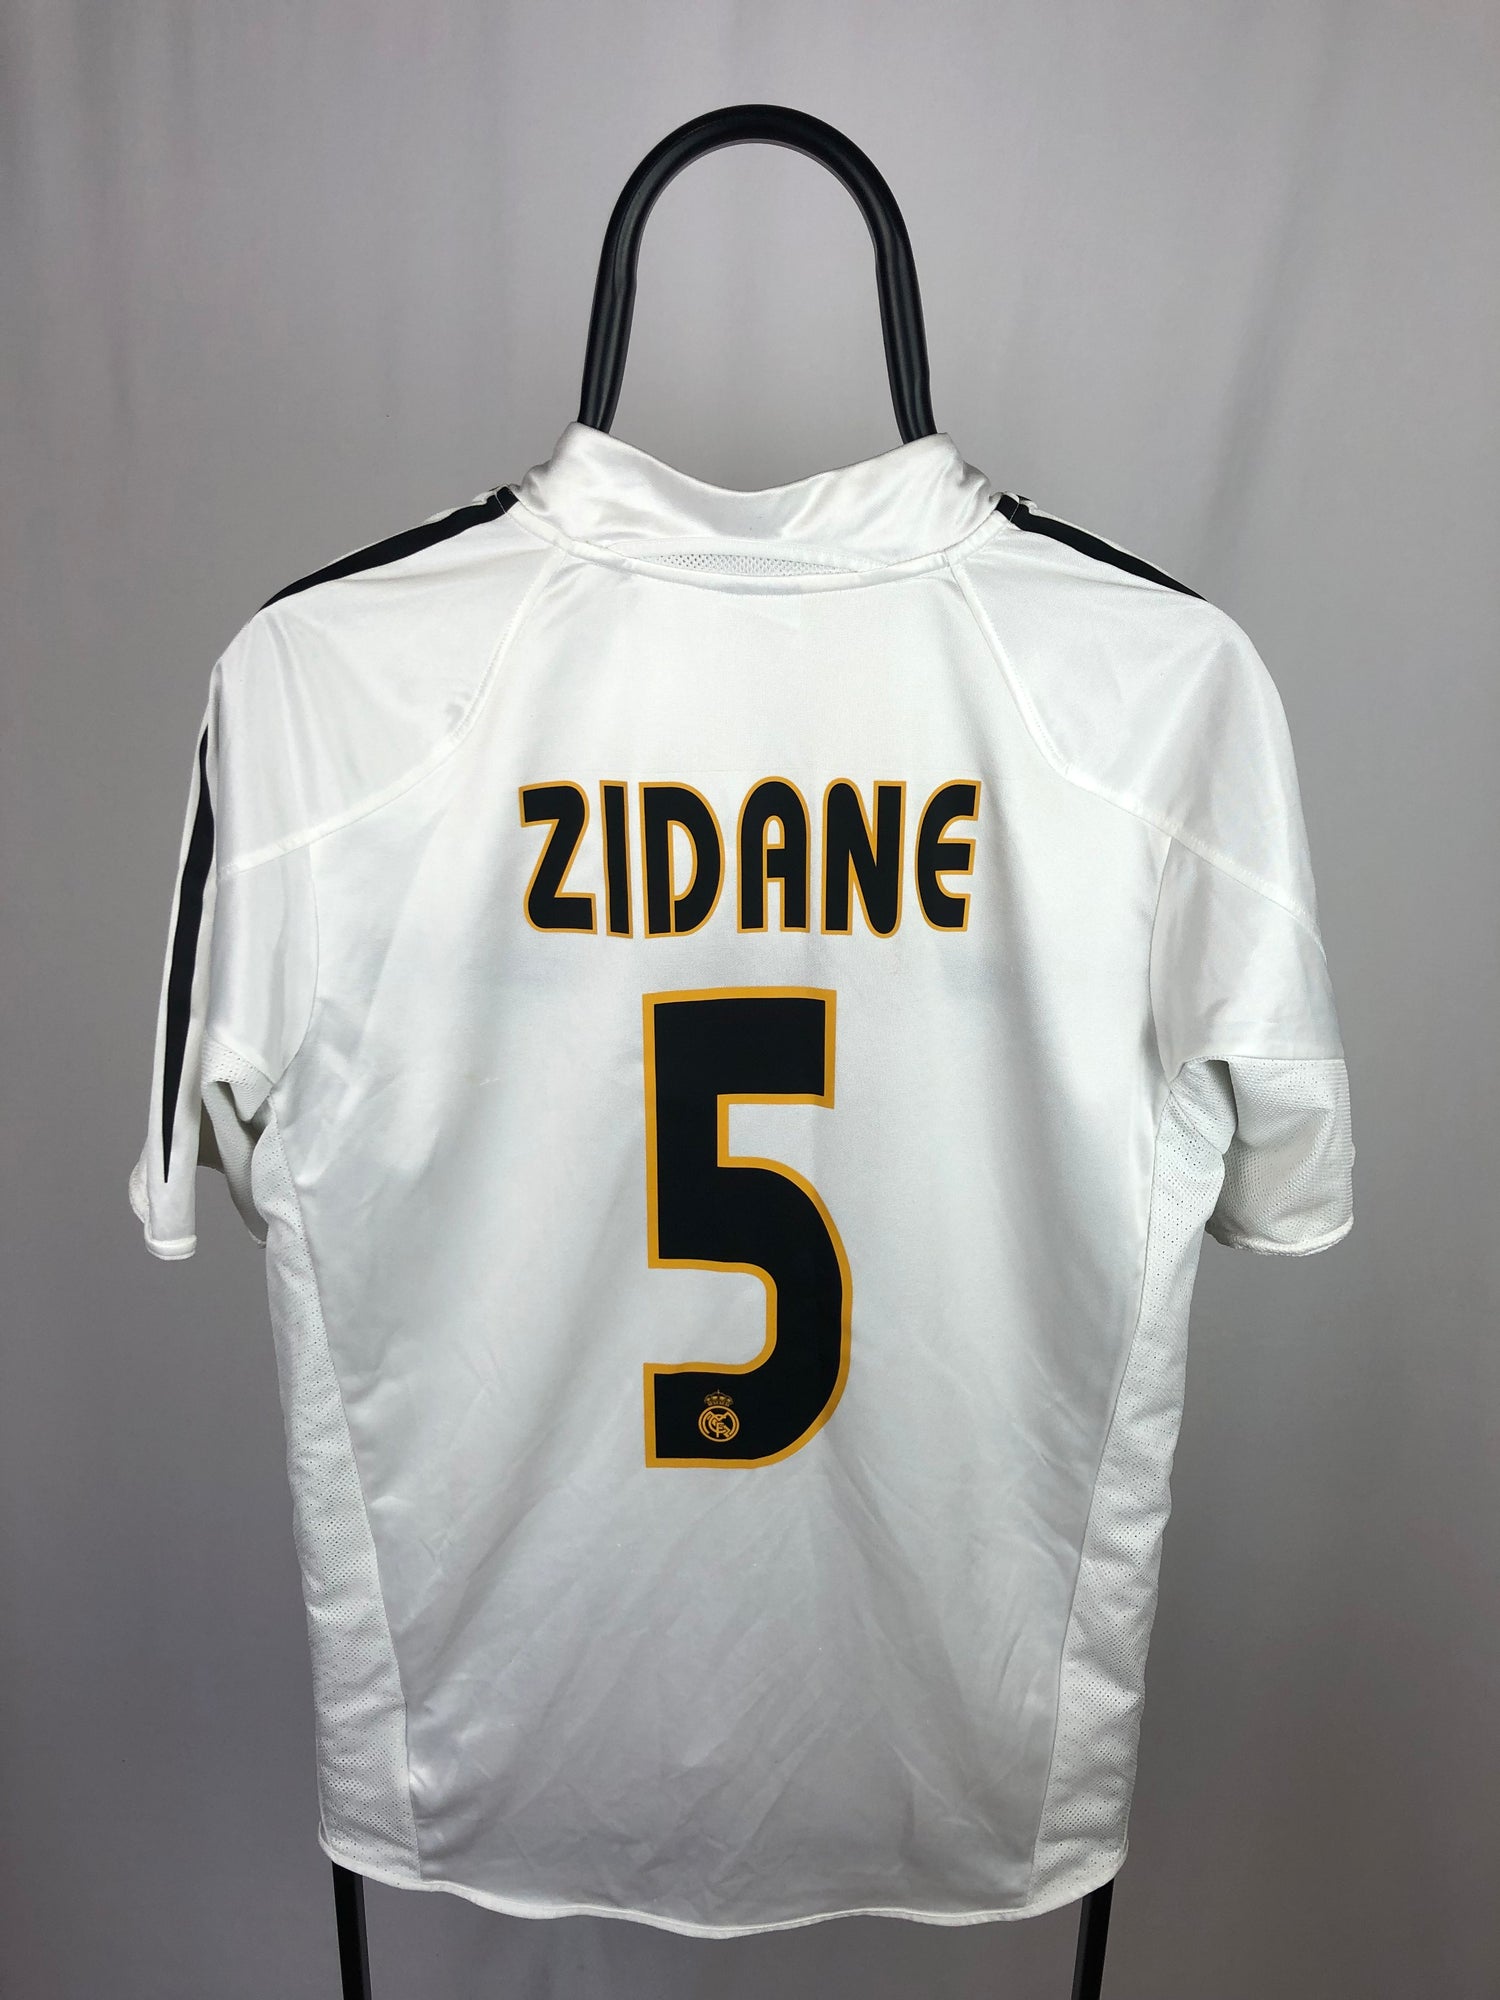 Zinedine Zidane Real Madrid 04/05 home shirt - M